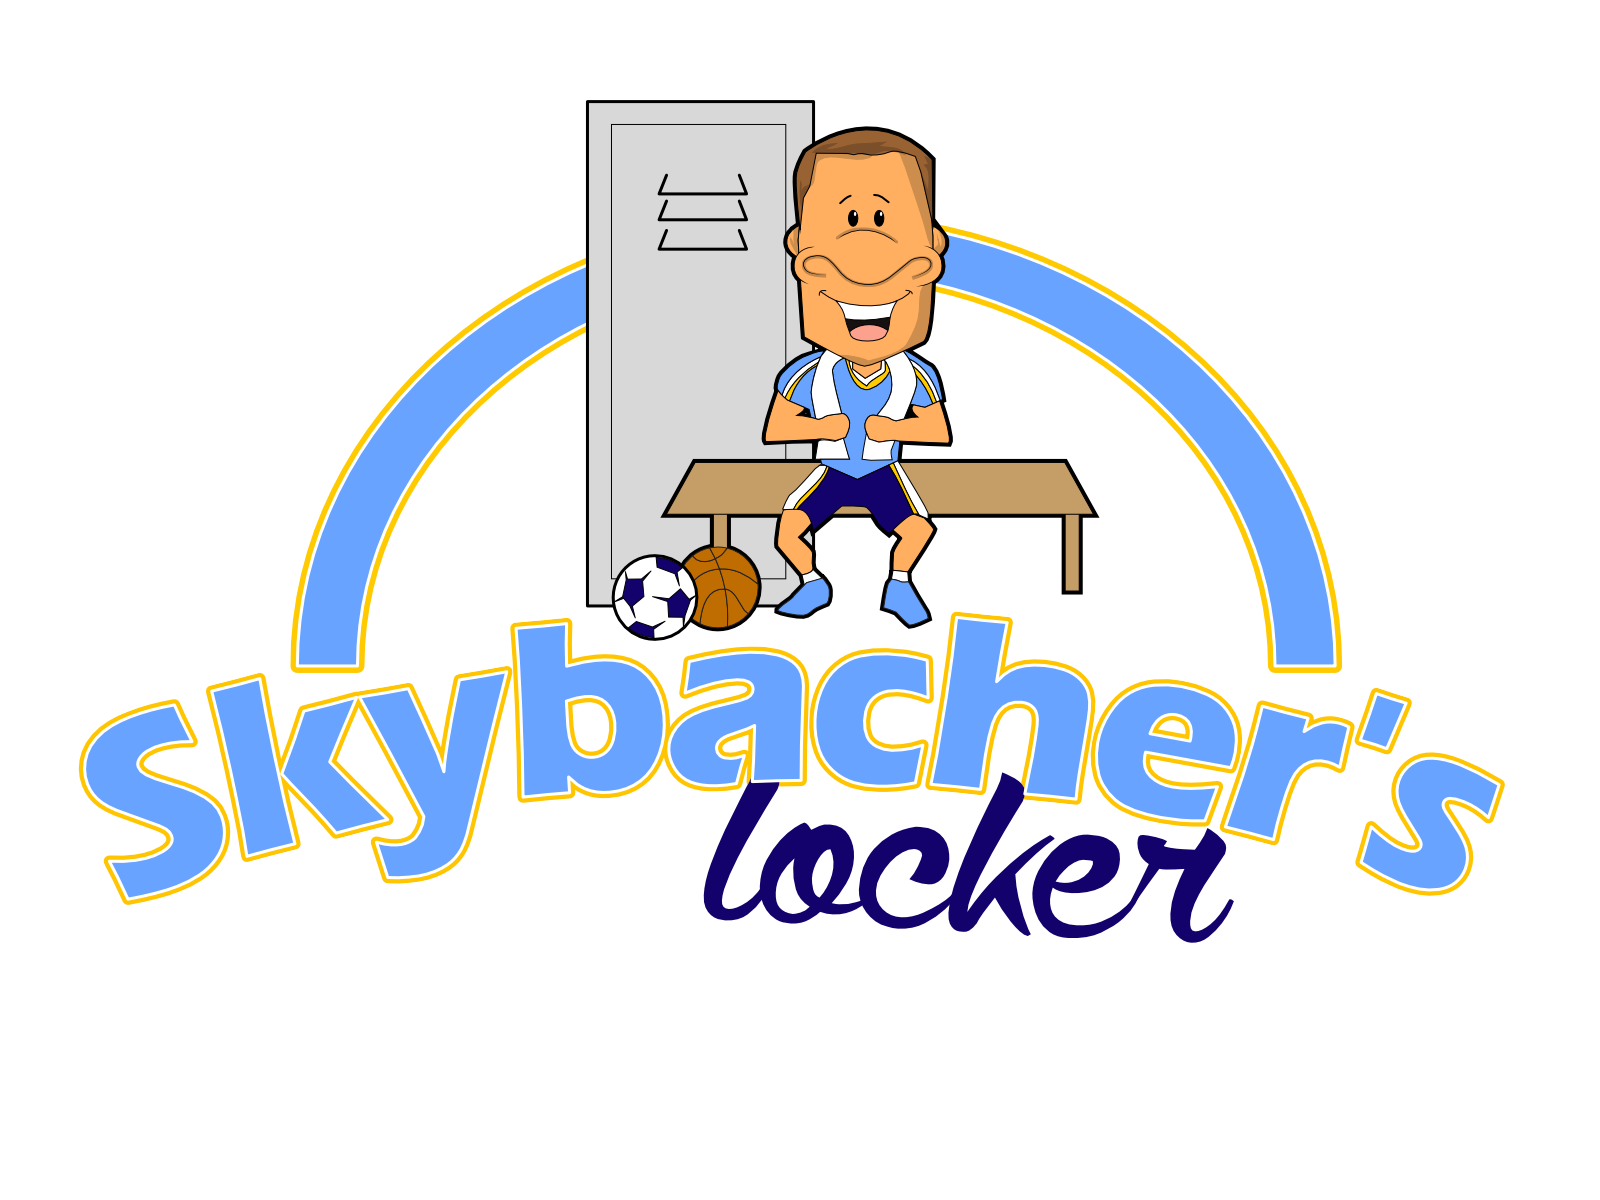 Skybacher's Locker